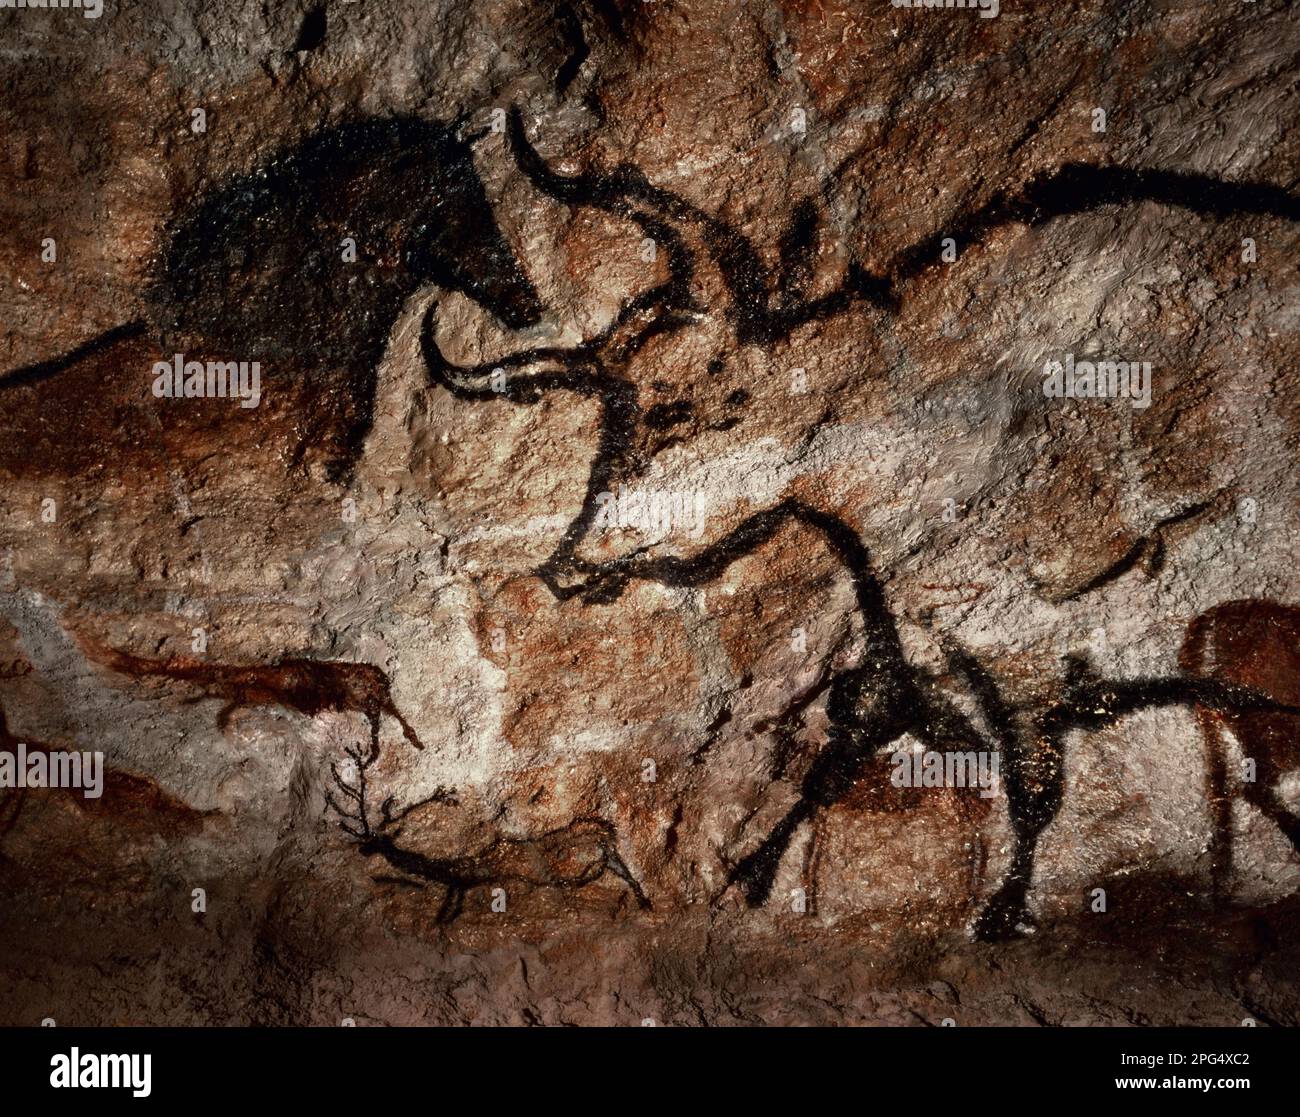 Les grottes de Lascaux sont des grottes décorées de peintures paléolithiques, considérées comme l'un des témoignages les plus importants de l'art préhistorique (UNESCO) Banque D'Images